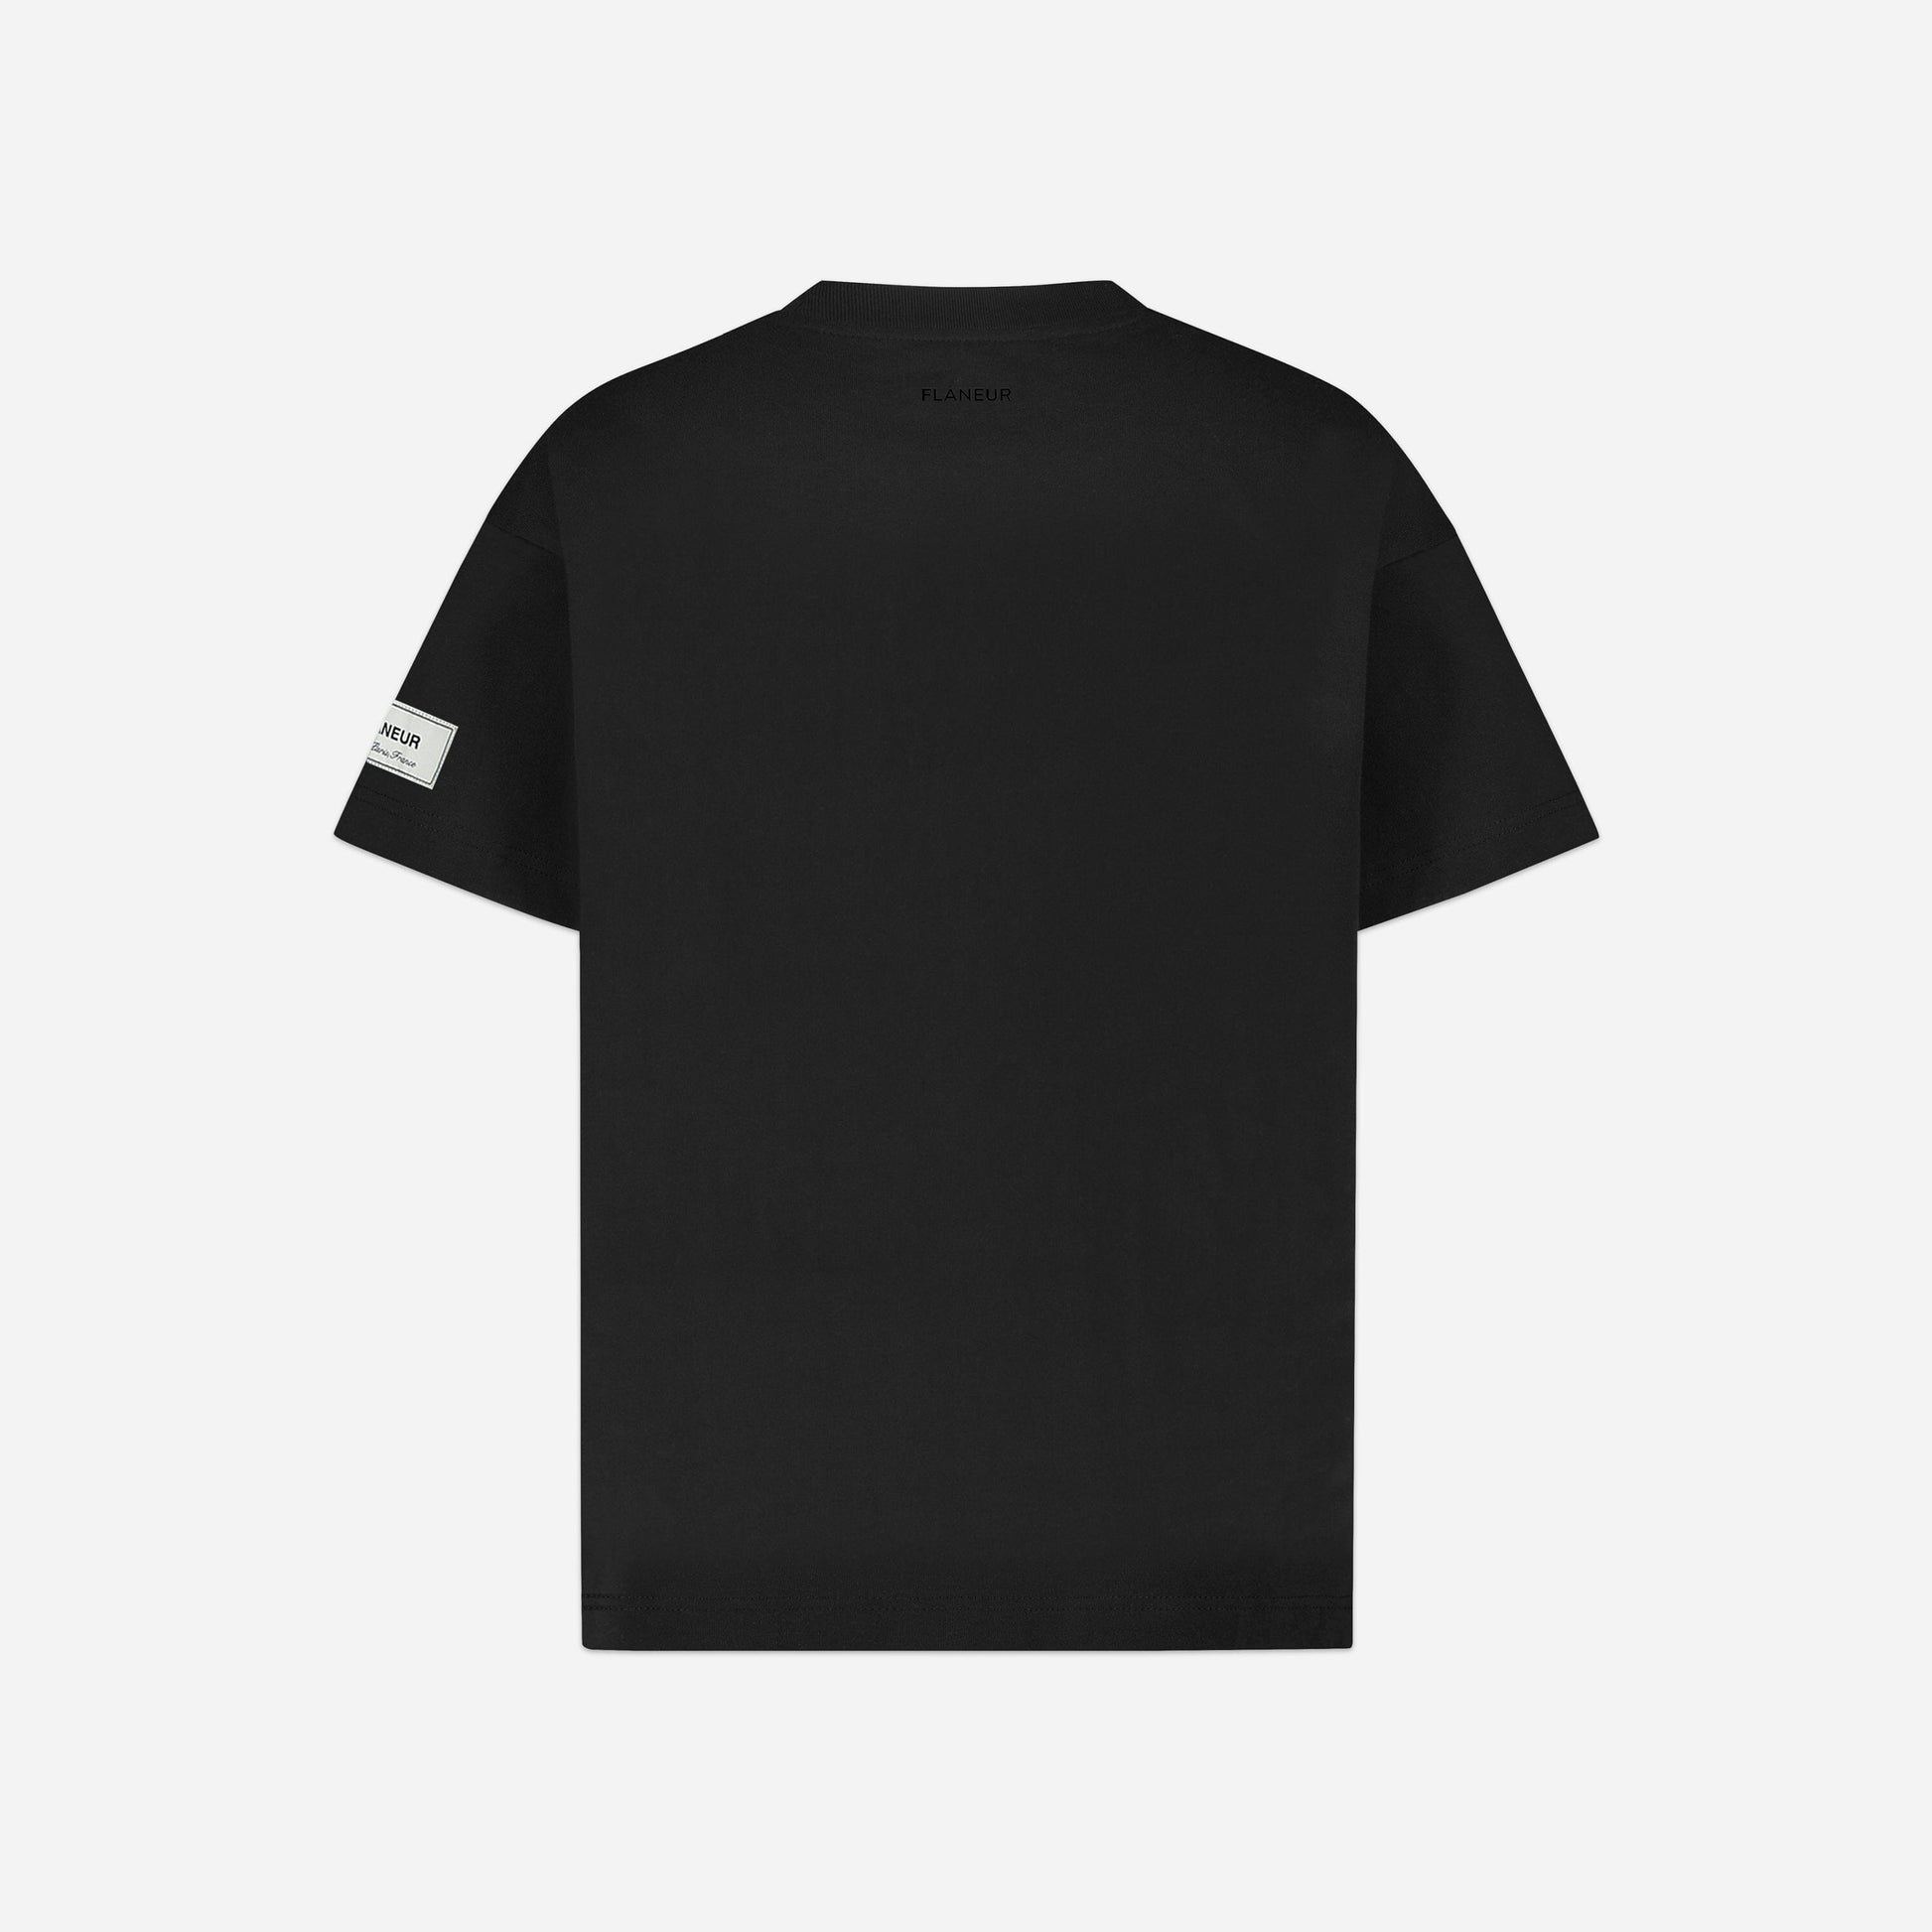 Atelier T-shirt Sleeve Emblem Black